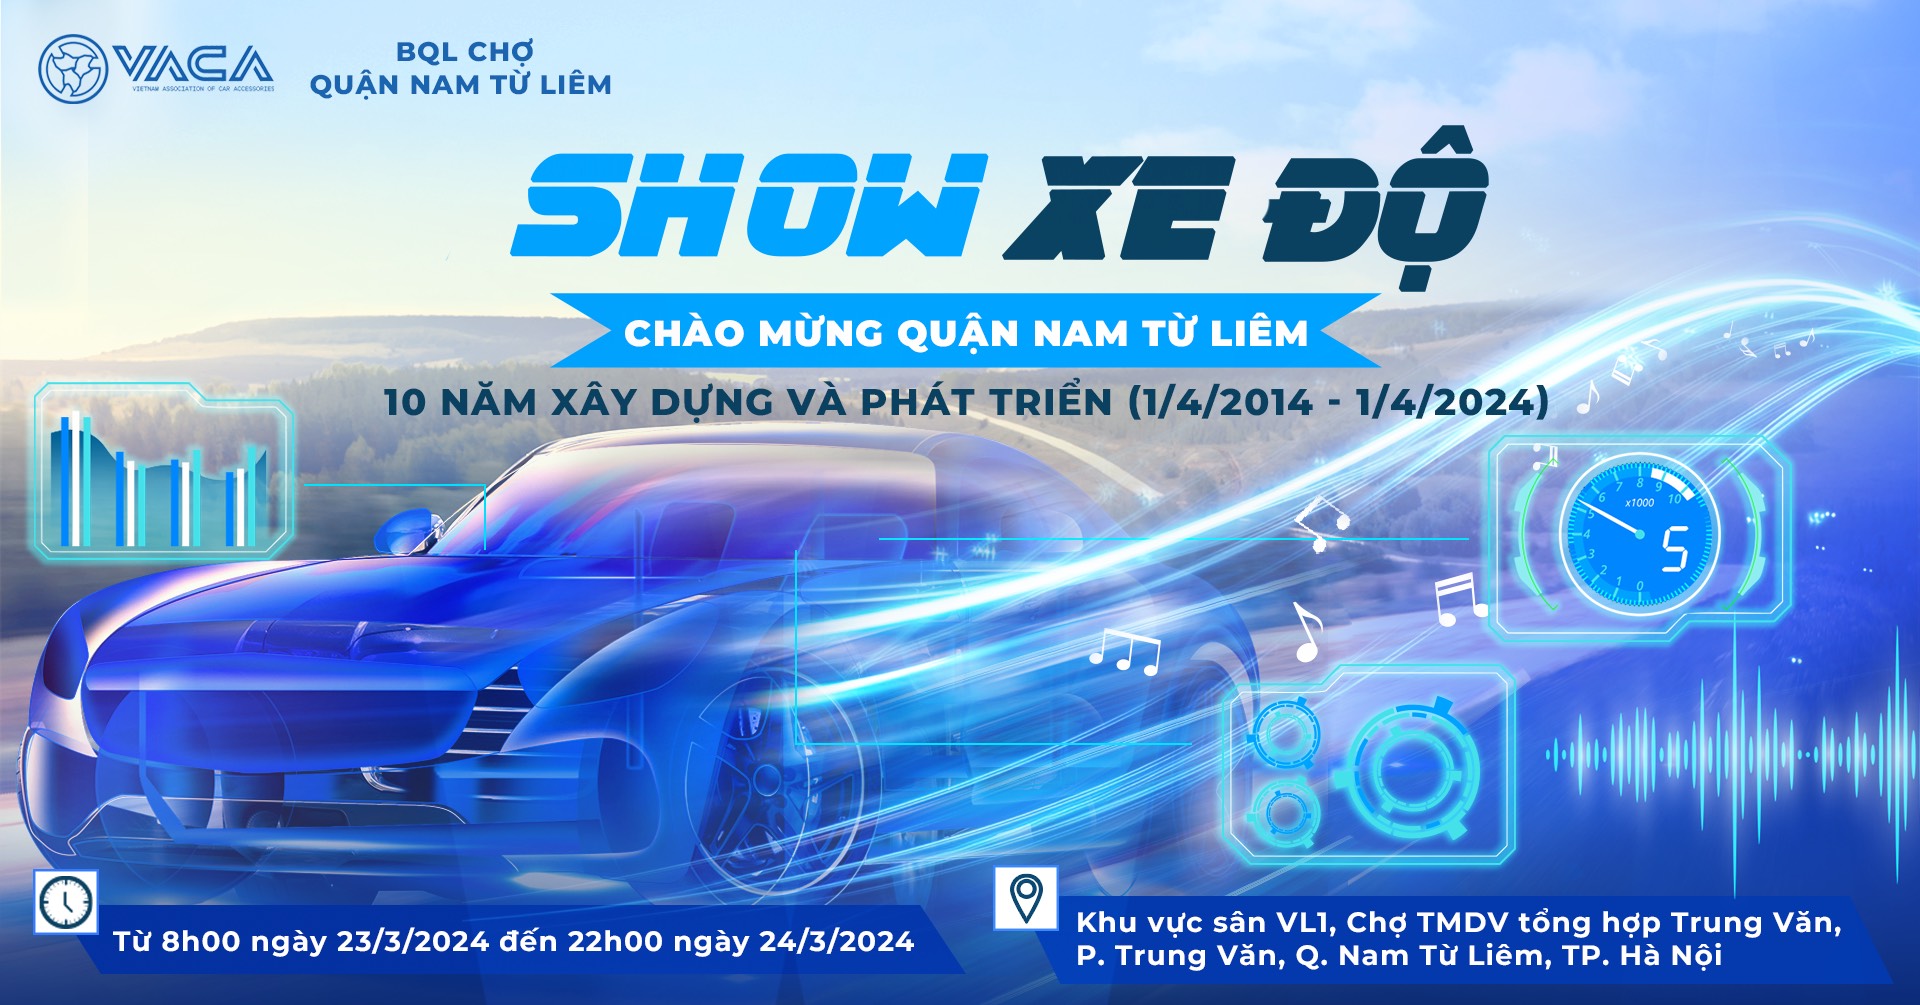 Đi xem SHOW XE ĐỘ tại quận Nam Từ Liêm – Hà Nội show-xe-do.jpg